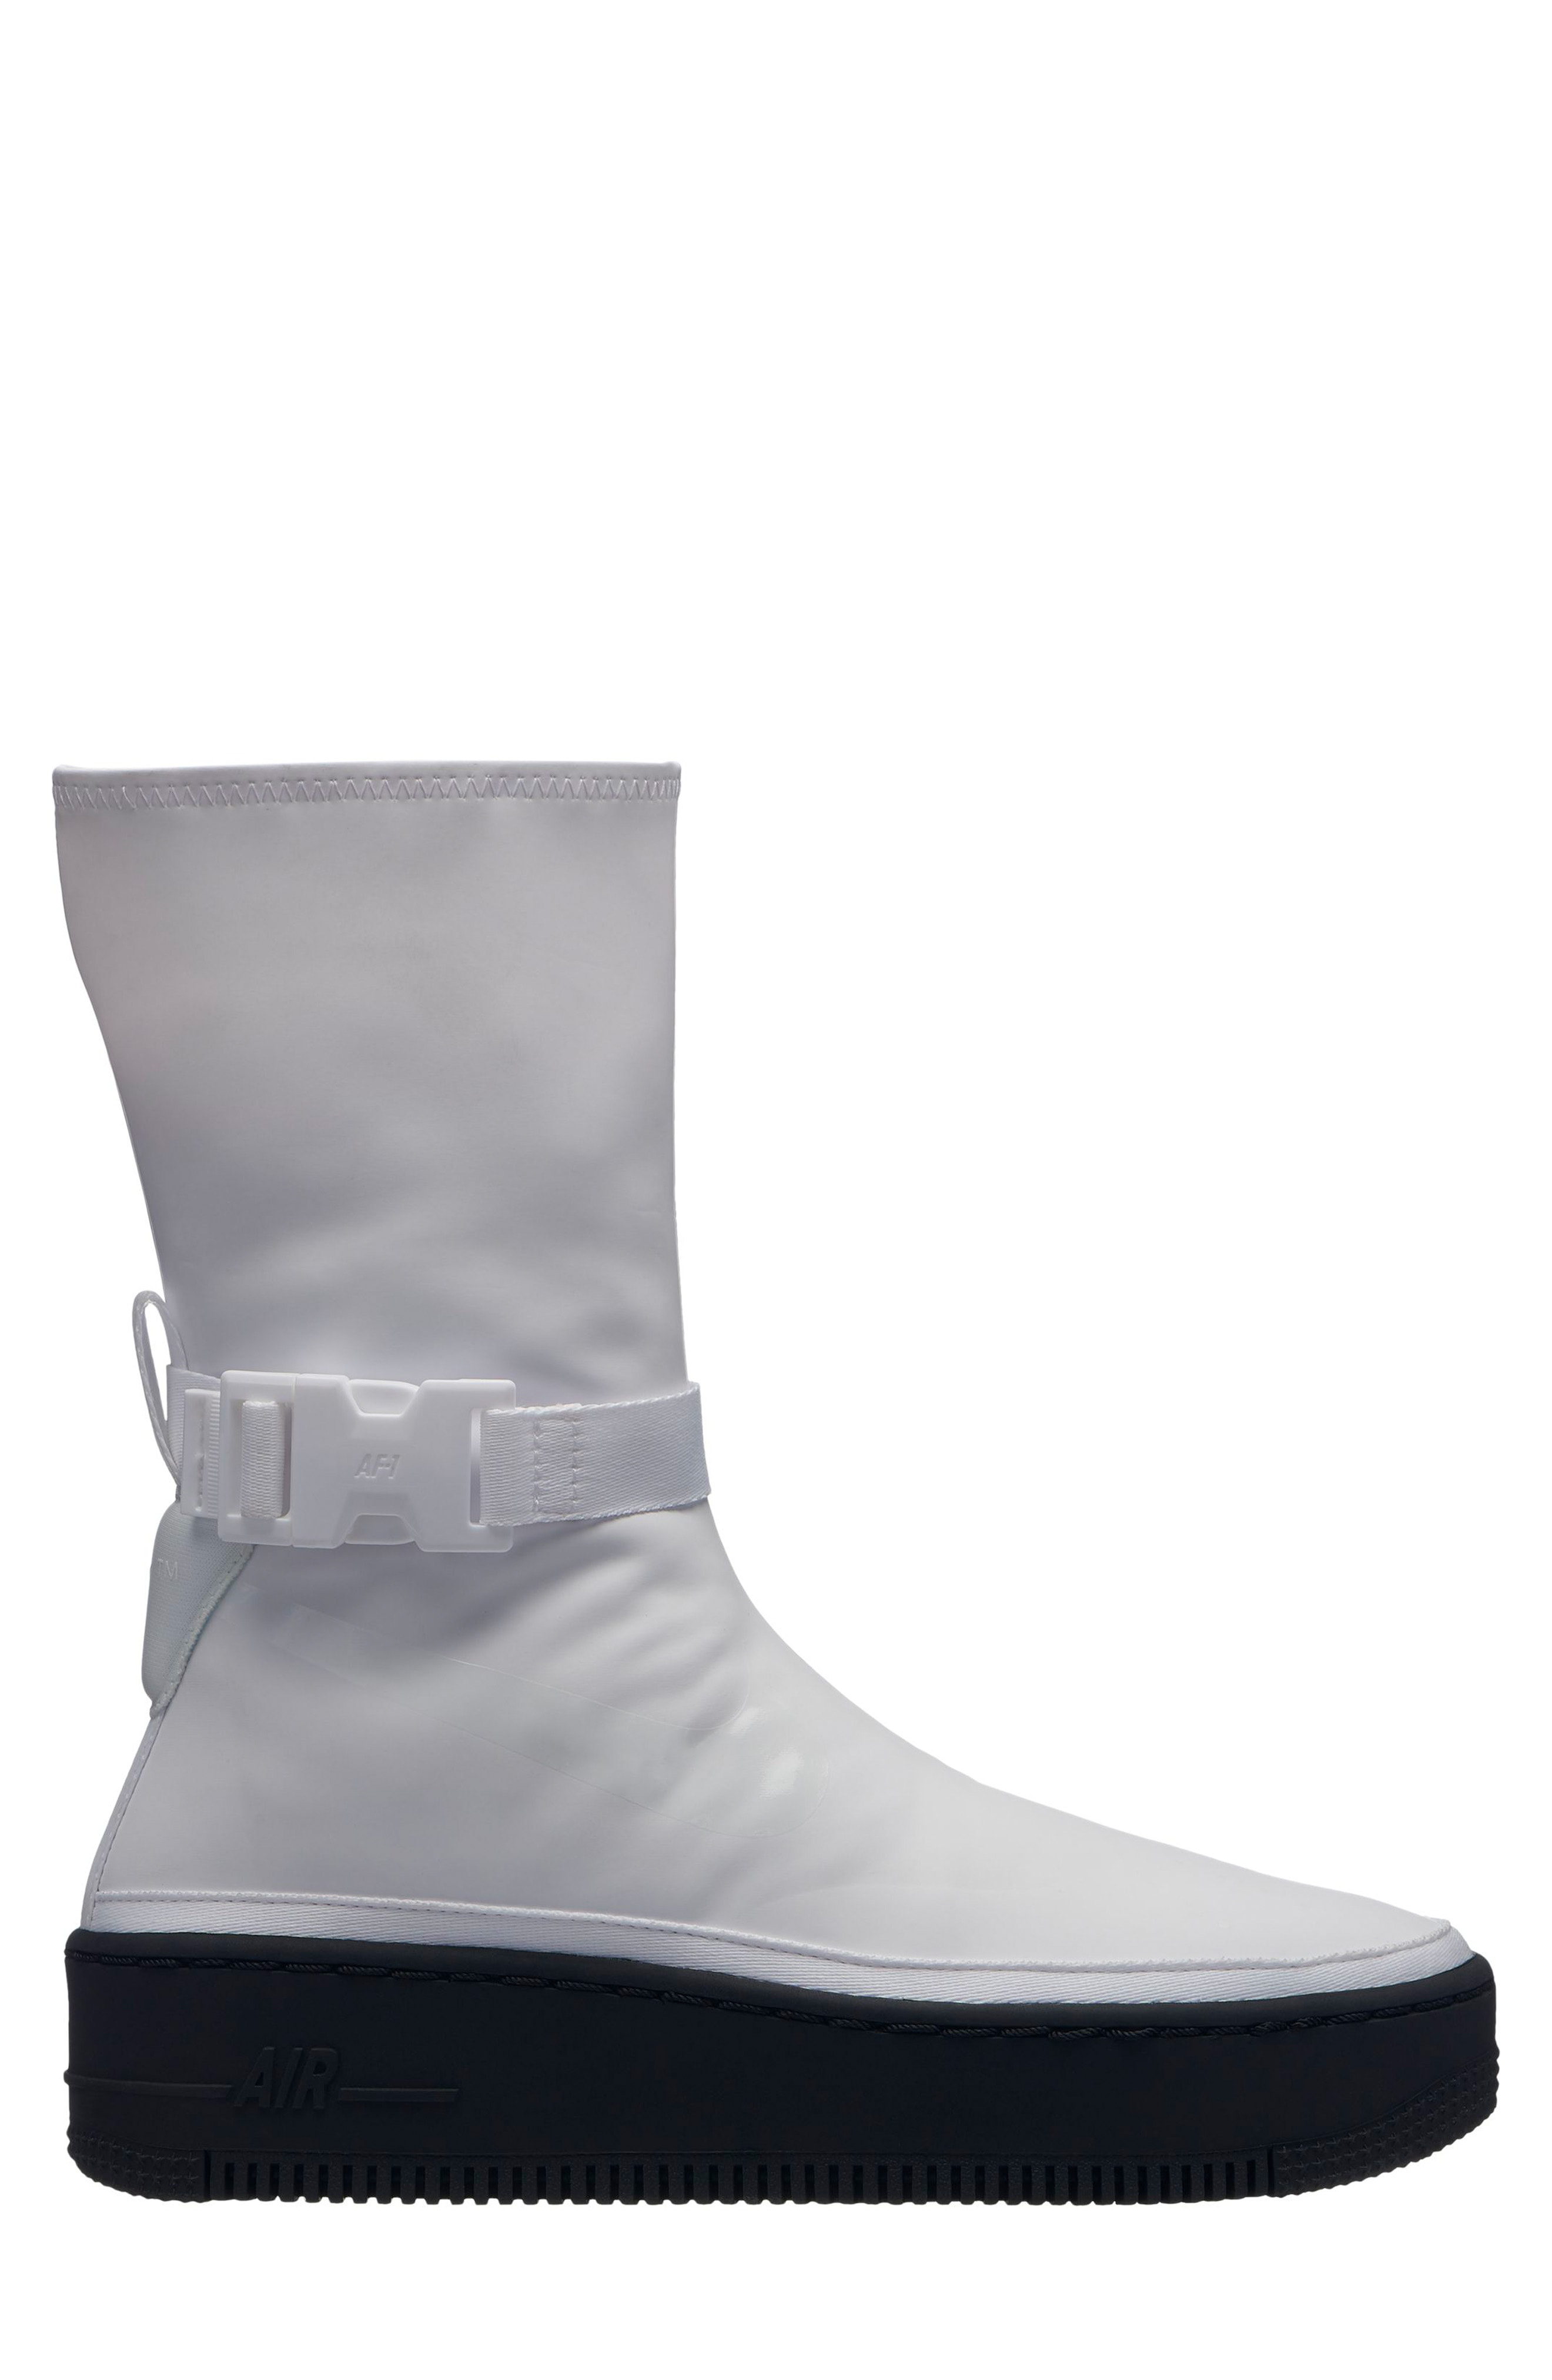 nike air force 1 rain boots